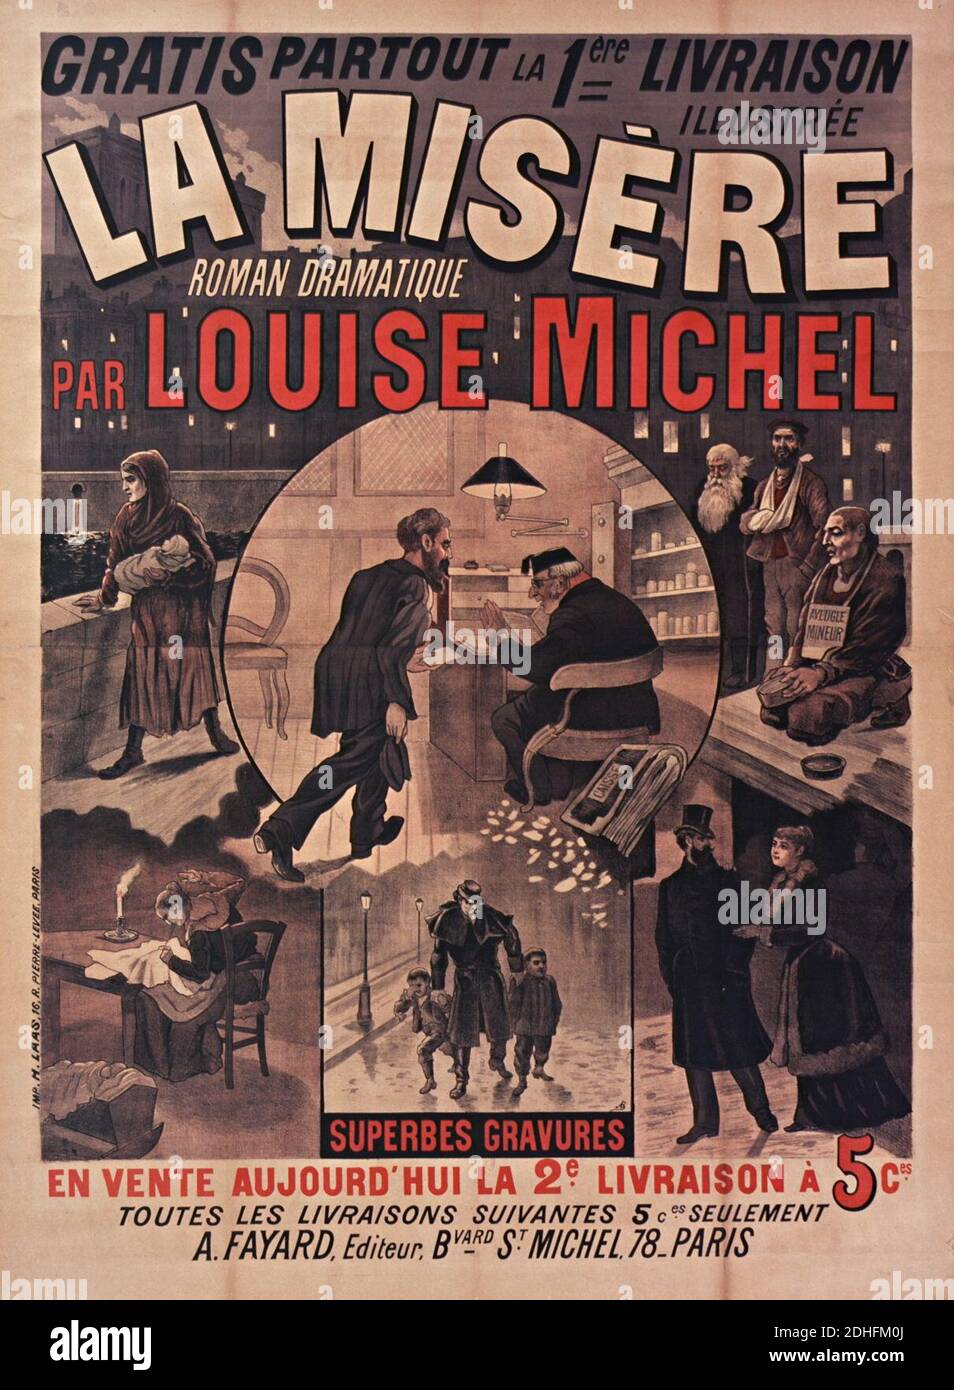 La misere Louise Michel. Foto Stock